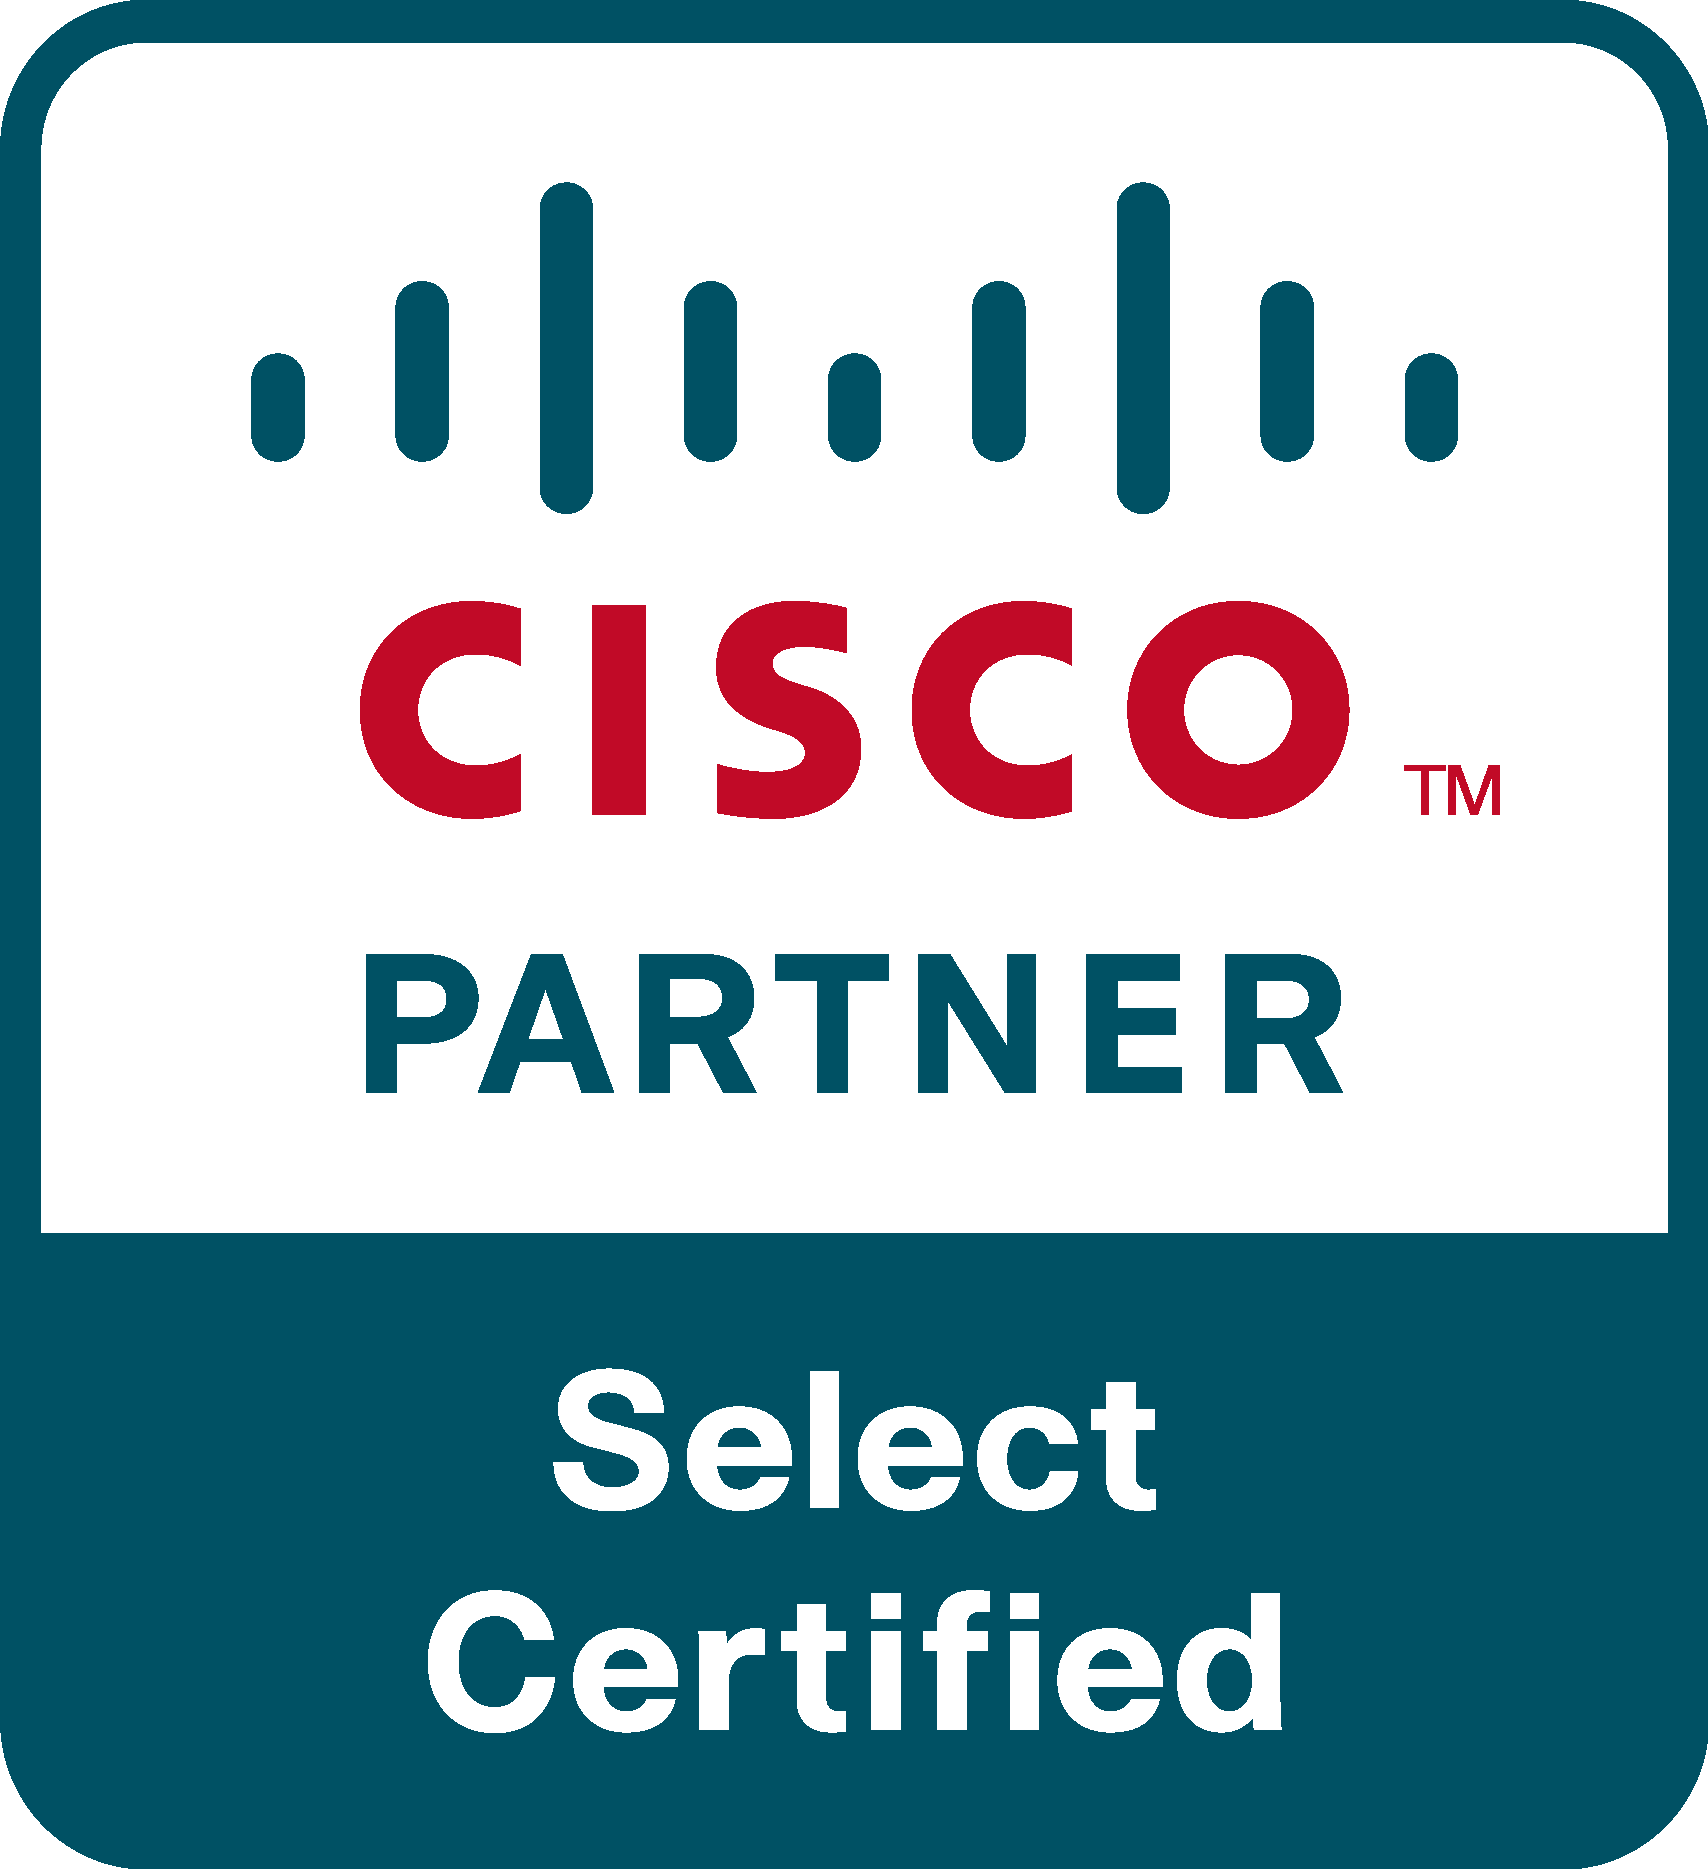 Cisco Certified Partner Logo Vector